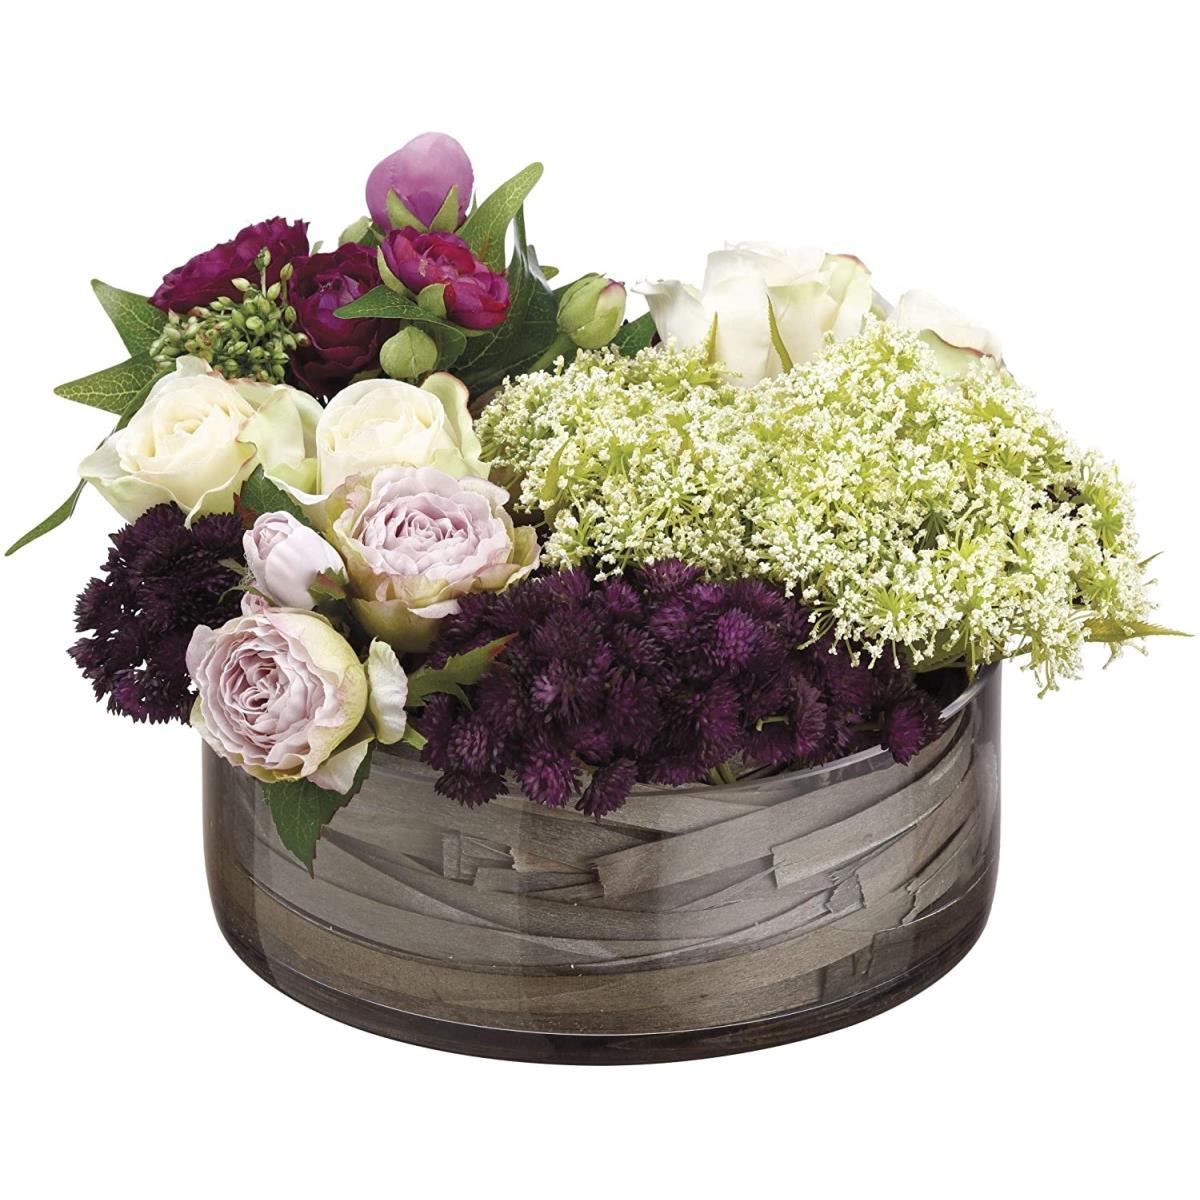 Picture of AllState Floral WF1990-PU-MV 9 x 14 x 14 in. Rose&#44; Sedum & Queen Annes Lace in Glass Vase - Purple & Mauve